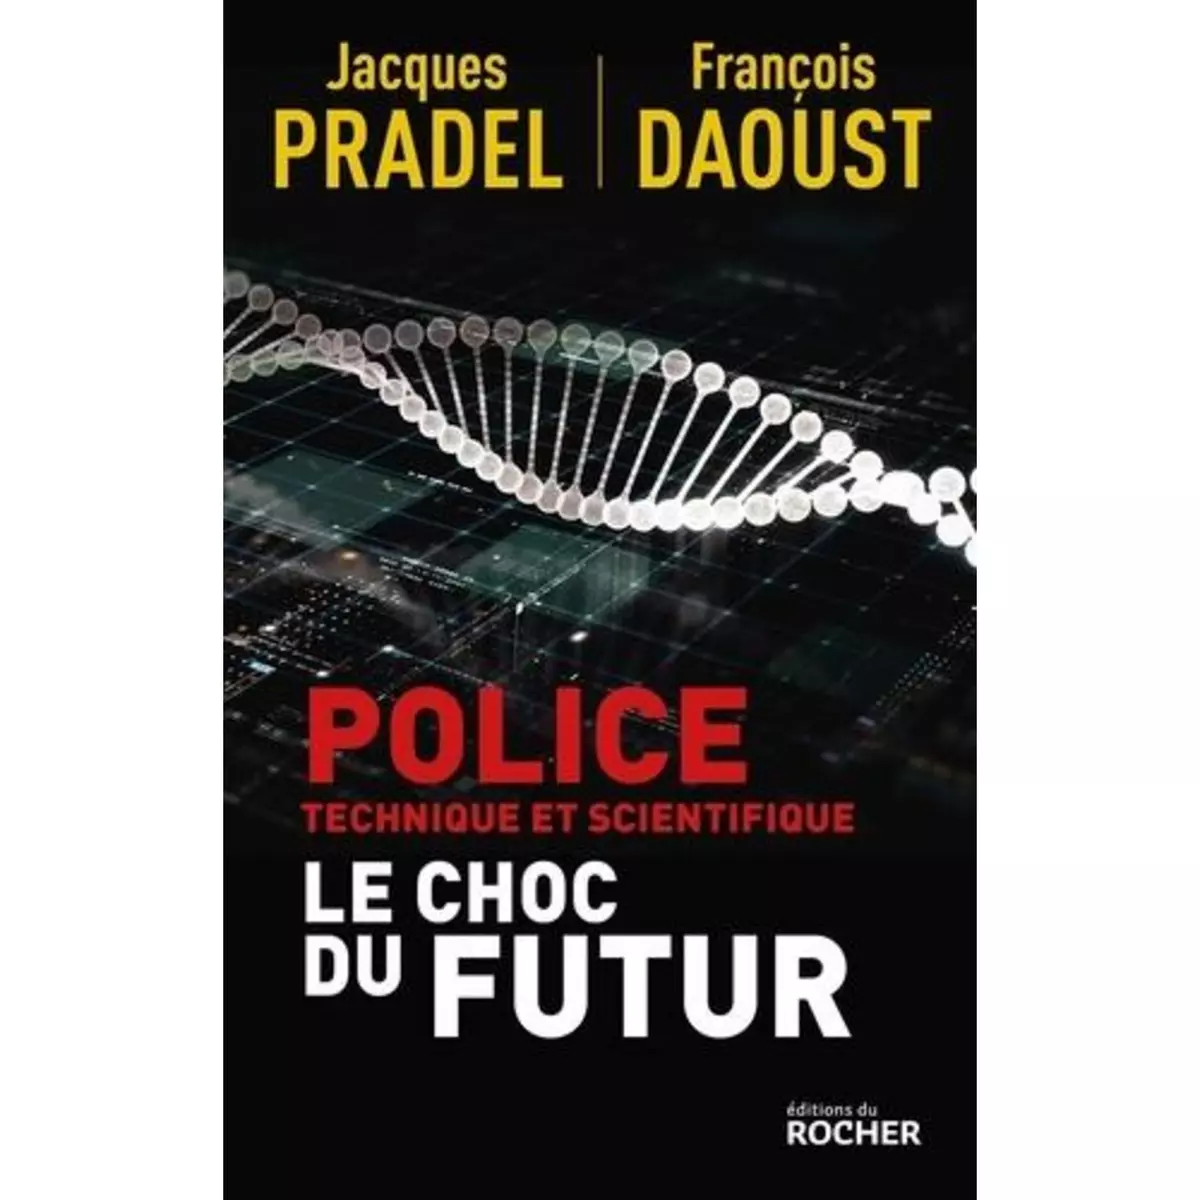  POLICE TECHNIQUE ET SCIENTIFIQUE. LE CHOC DU FUTUR, Pradel Jacques